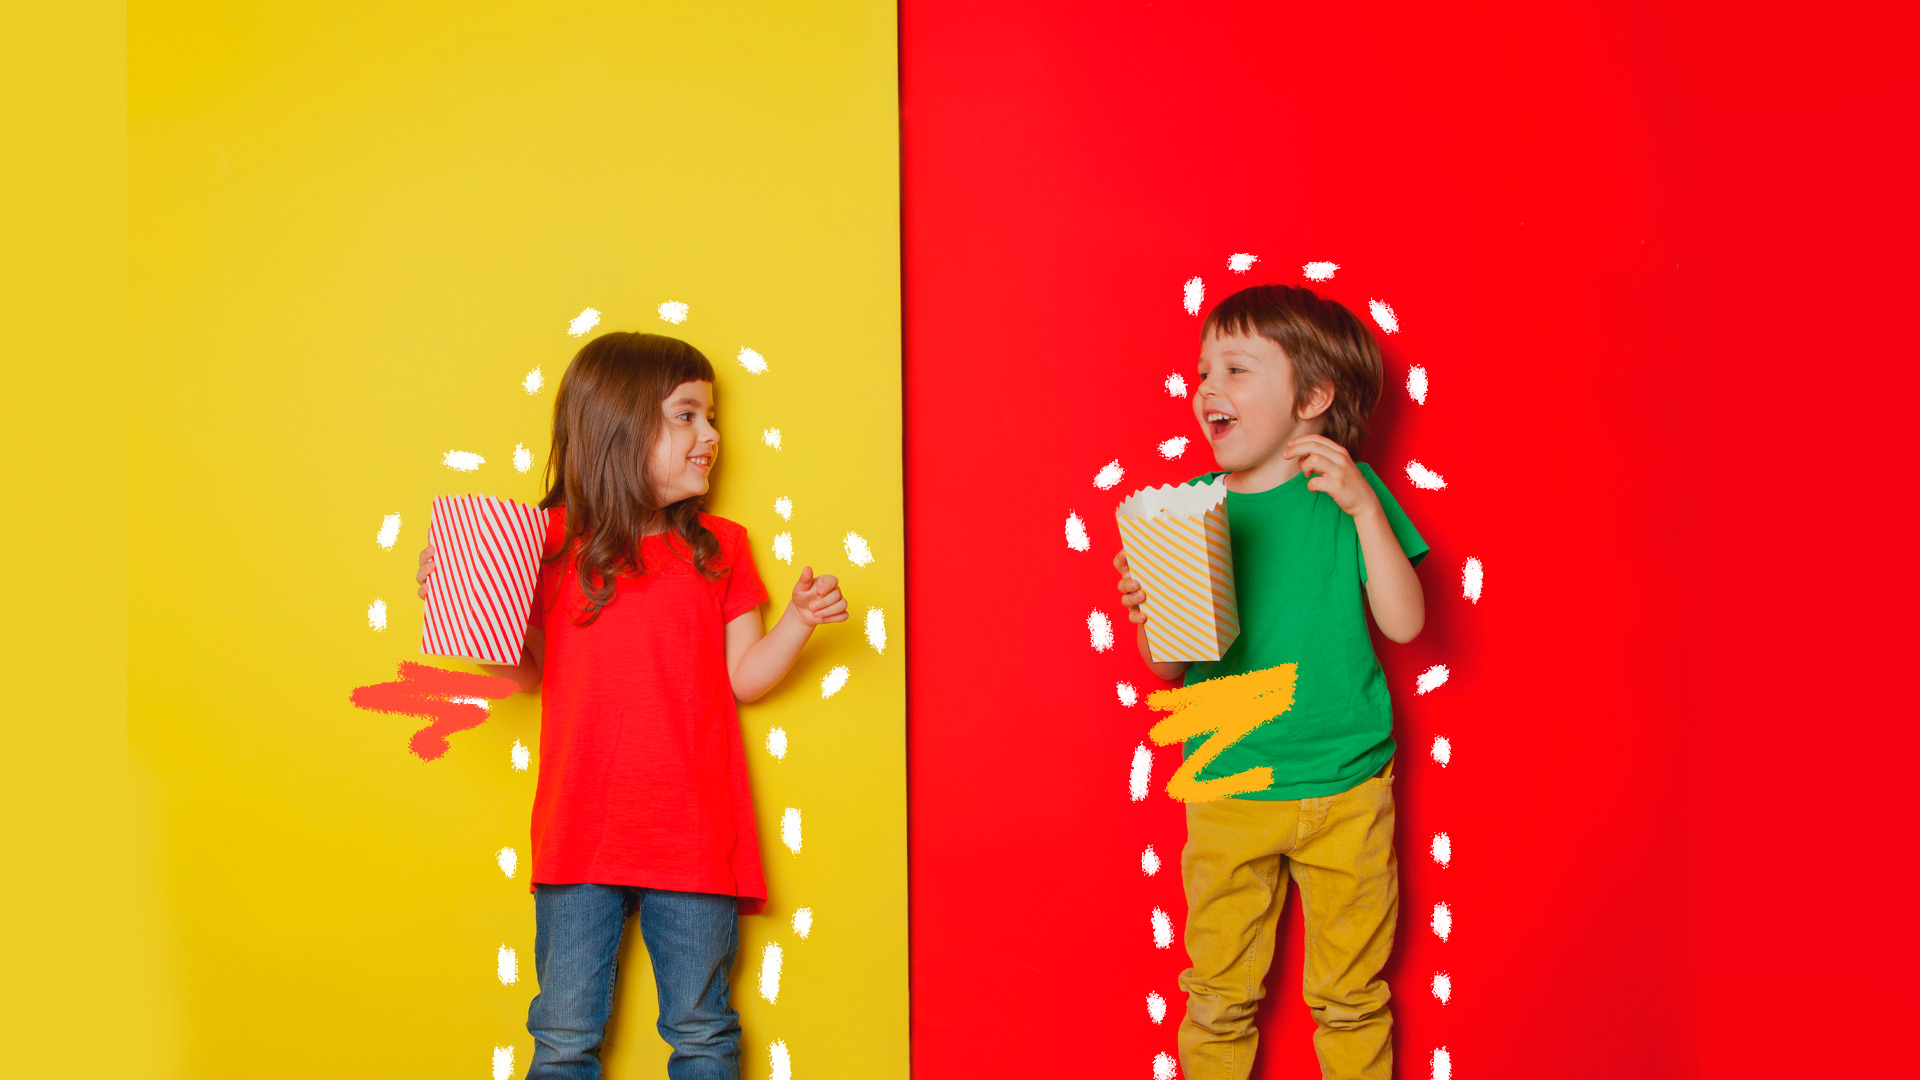 Takorama: duas crianças vestindo roupas muito coloridas e em ujm fundo amarelo e eazul estão de pé, sorrindo e comendo pipoca